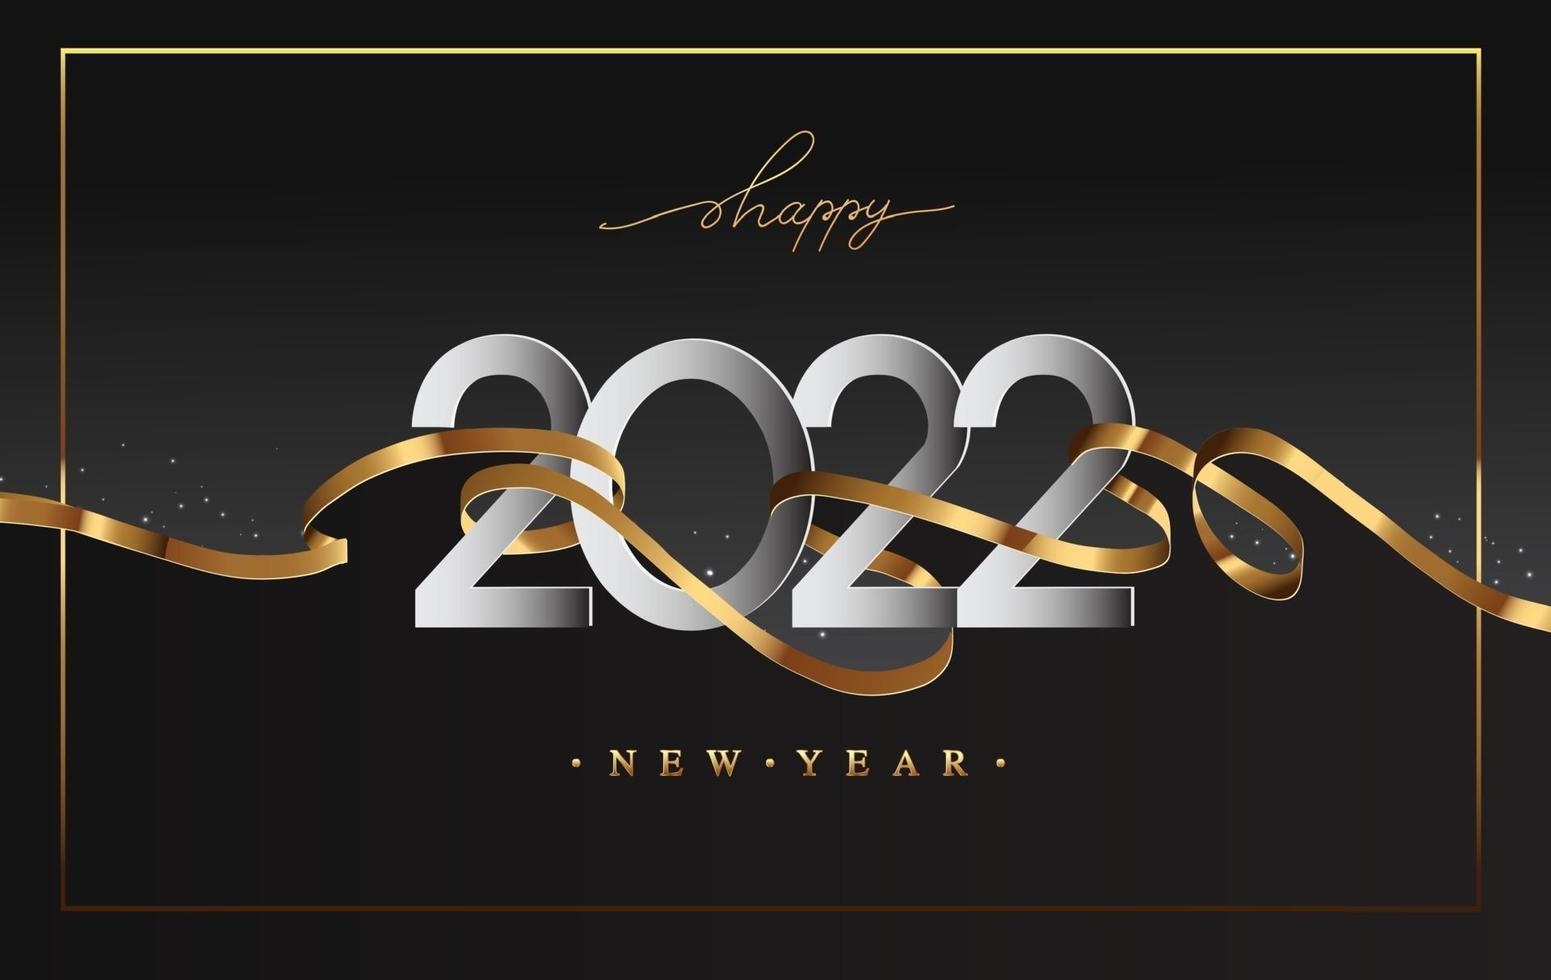 ano novo 2022 - cartão comemorativo com fita dourada vetor